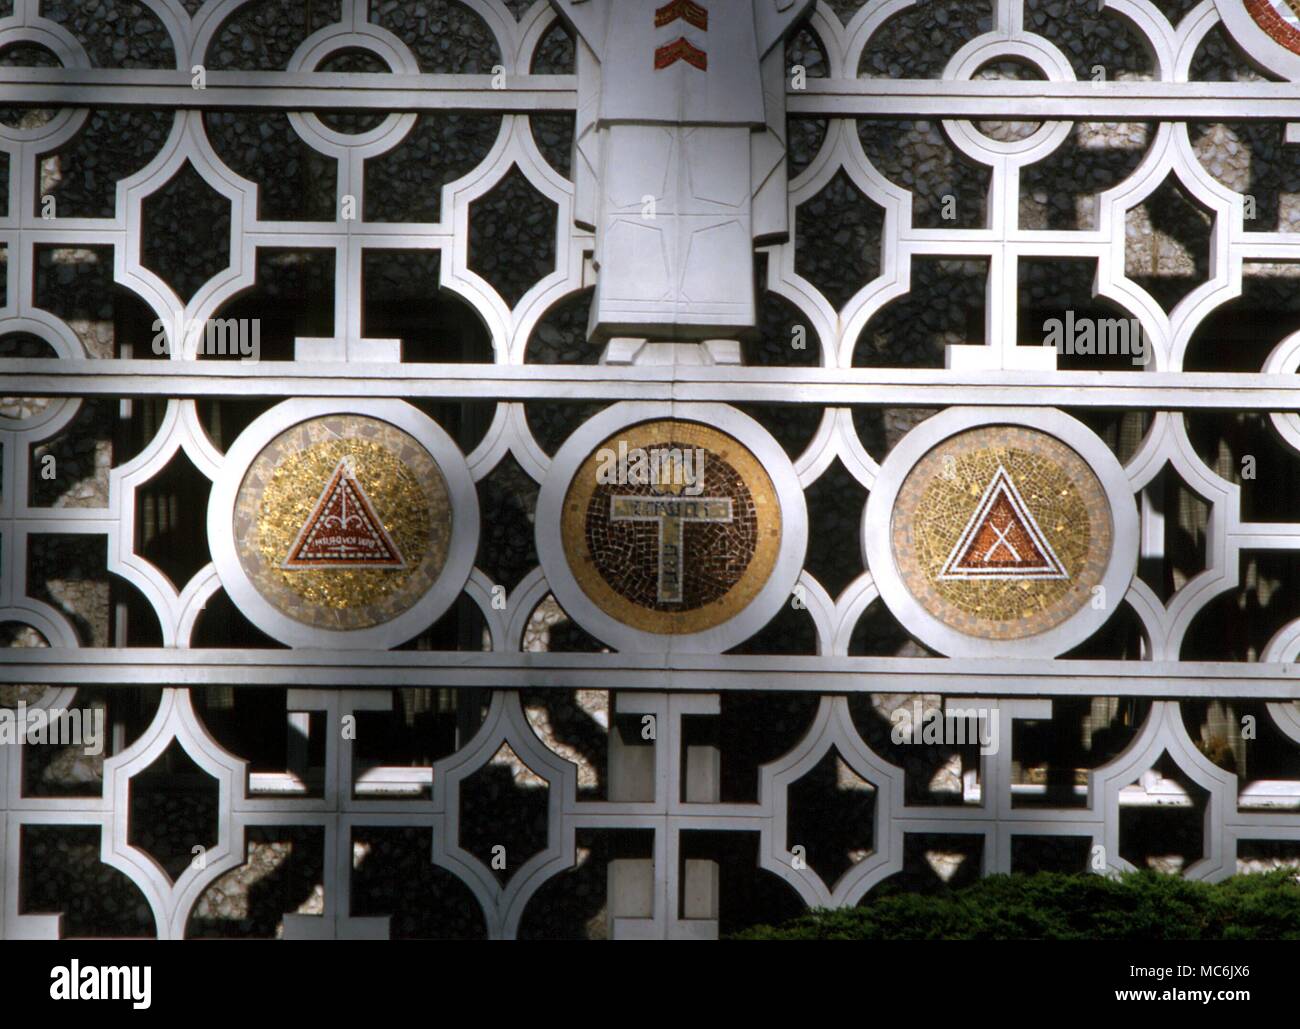 Symboles maçonniques sur le treillis de protection autour du dépistage de la façade (maçonnique Rites écossais) Temple de San Francisco Banque D'Images